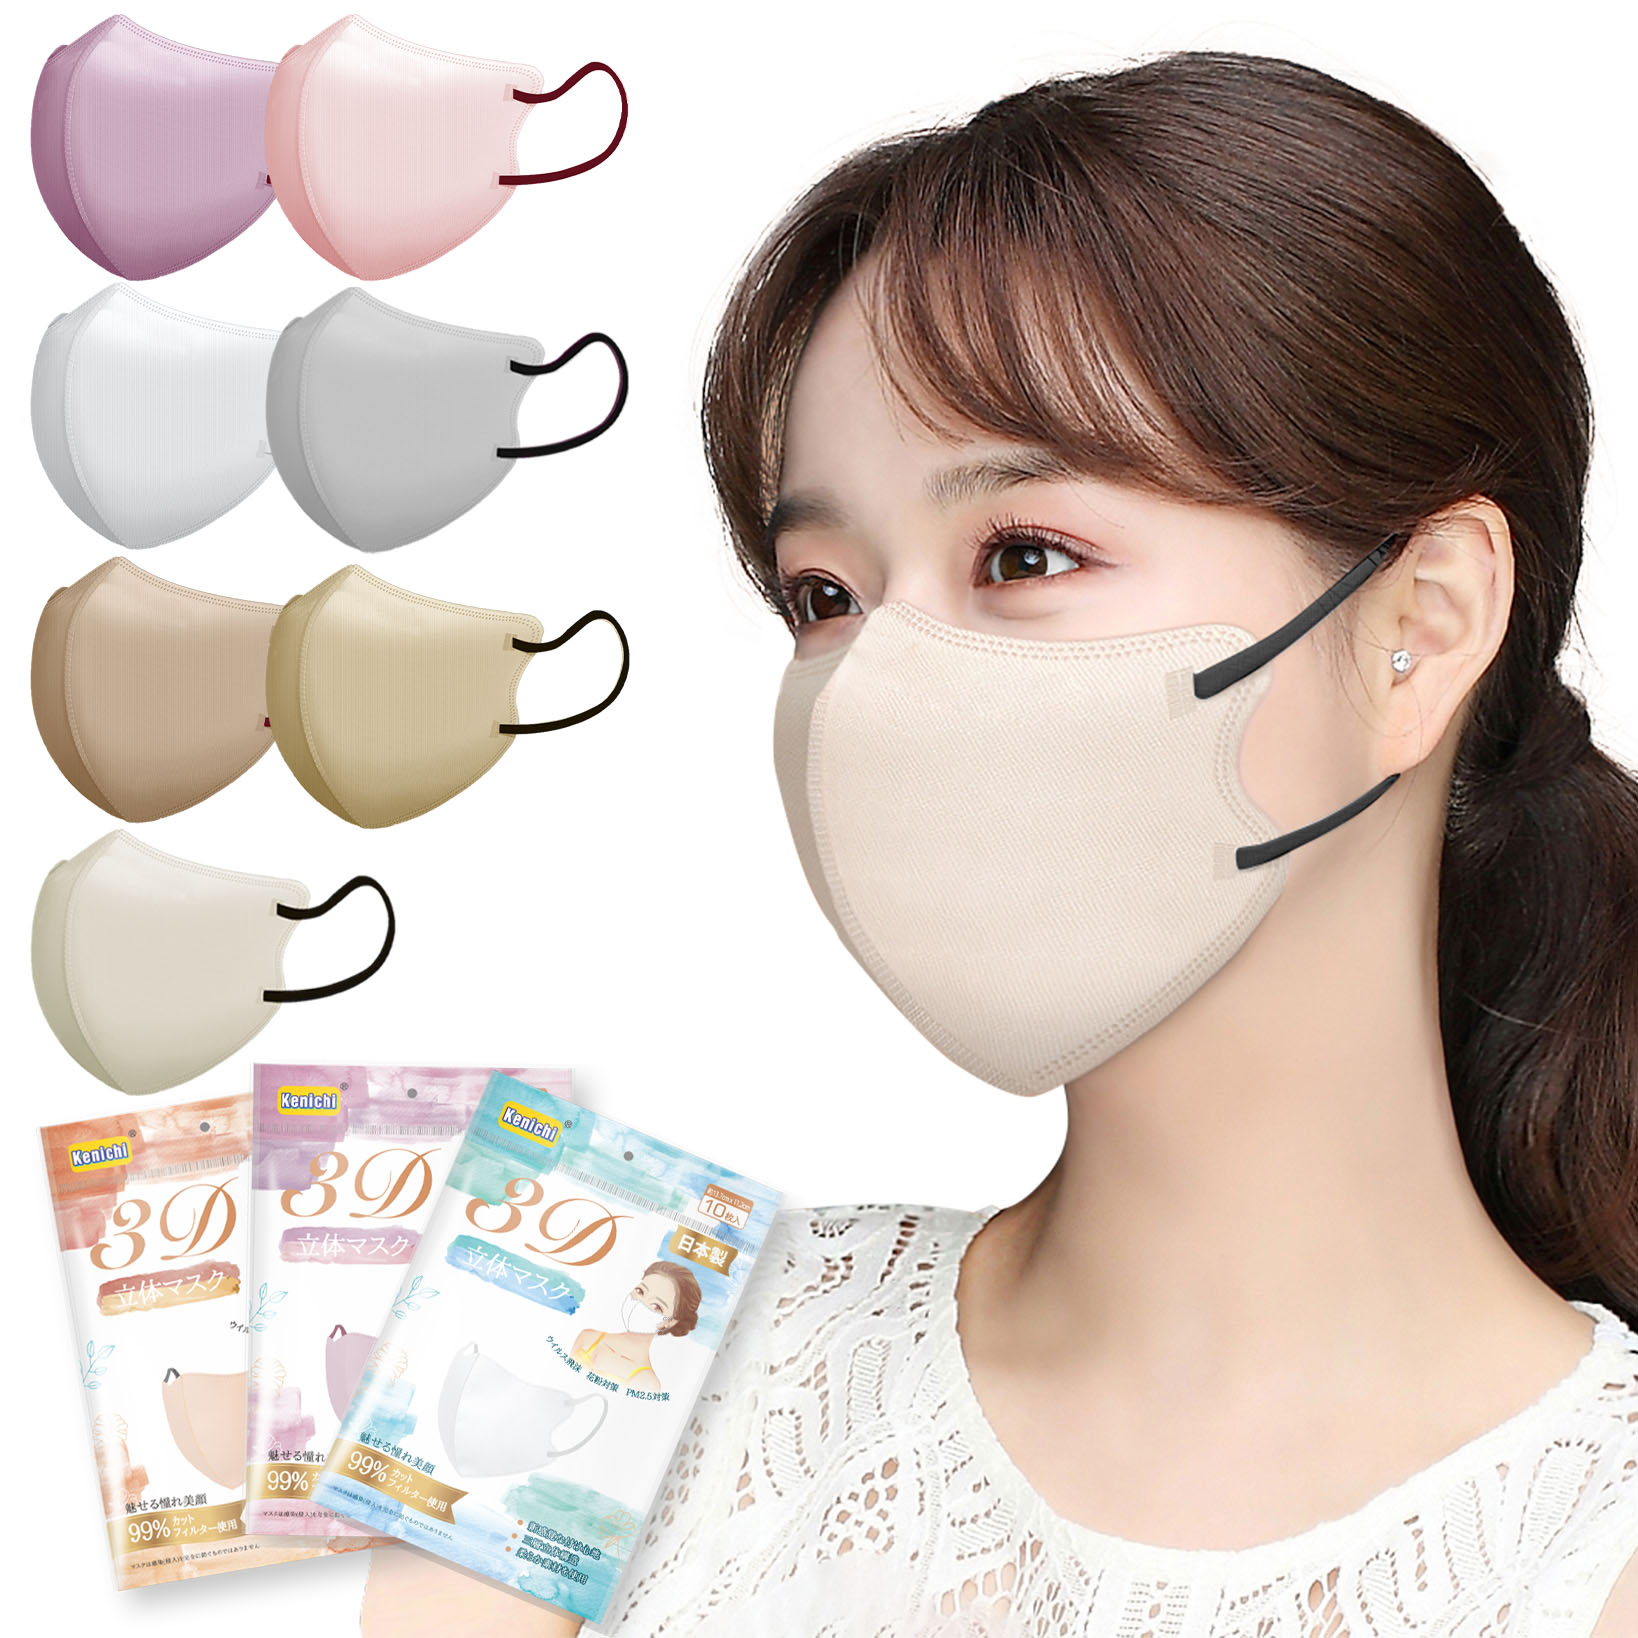 立体マスク 3D 不織布 日本製 カラー くちばし 20枚(10枚入*2袋) 小顔 使い捨て メガネが曇りにくい 呼吸しやすい 口紅に付かない 耳が痛くならない 熱中症対策917542